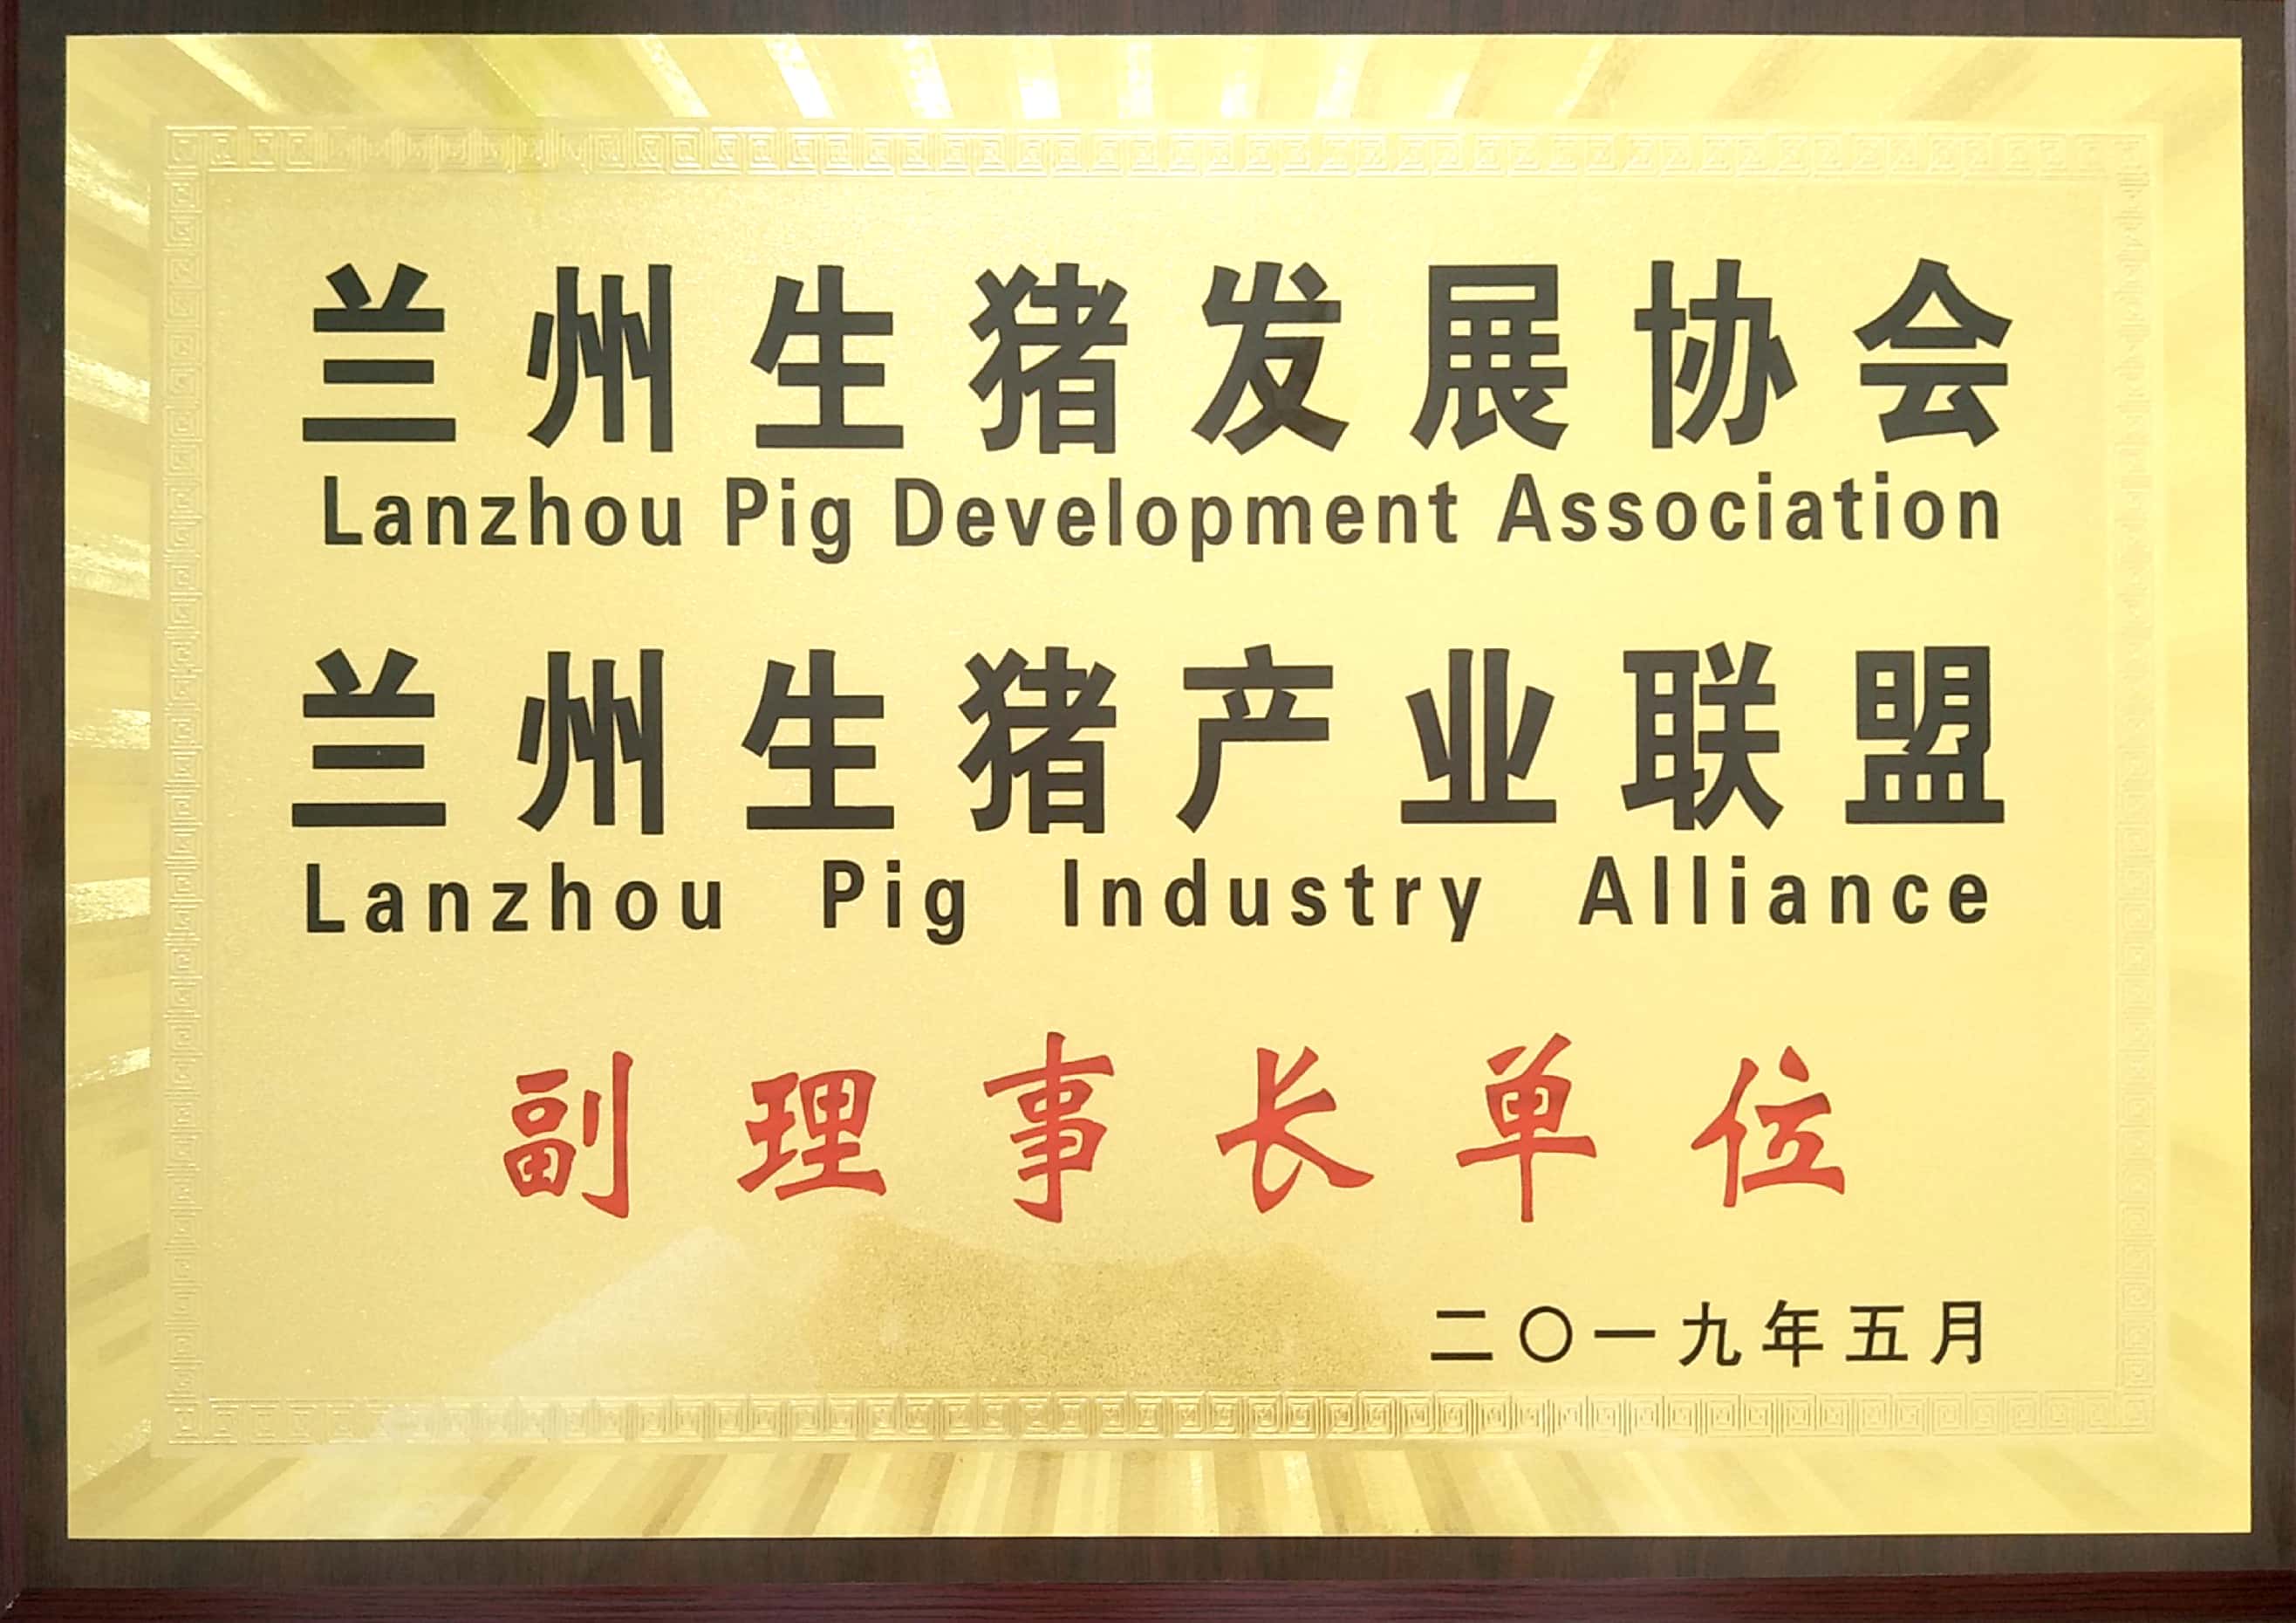 蘭州生豬發展協會、蘭州生豬産業聯盟副理(lǐ)事長(cháng)單位